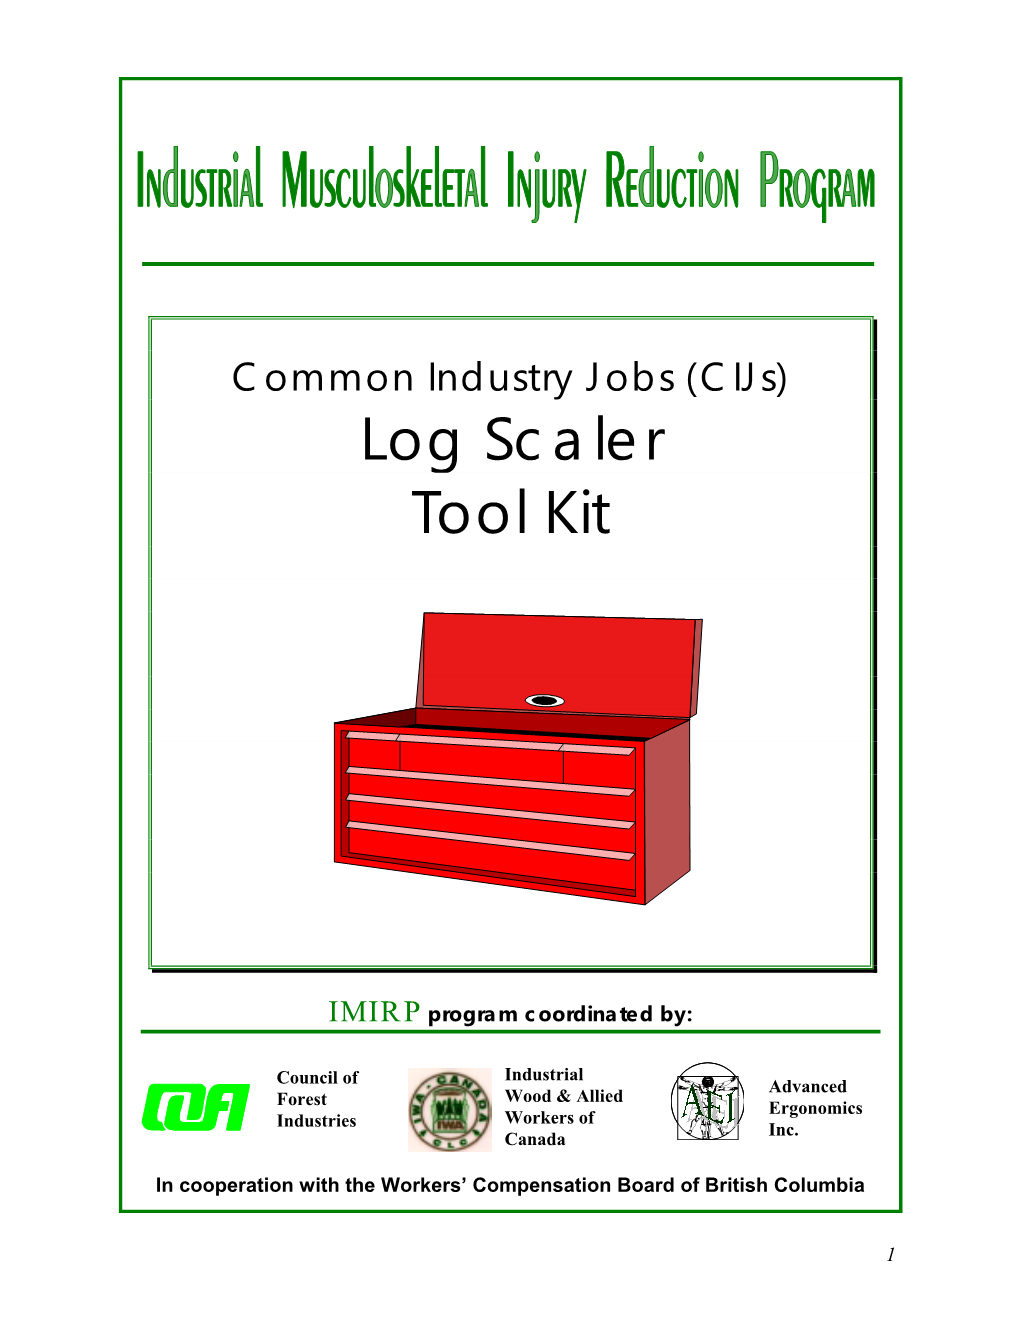 Log Scaler Tool Kit